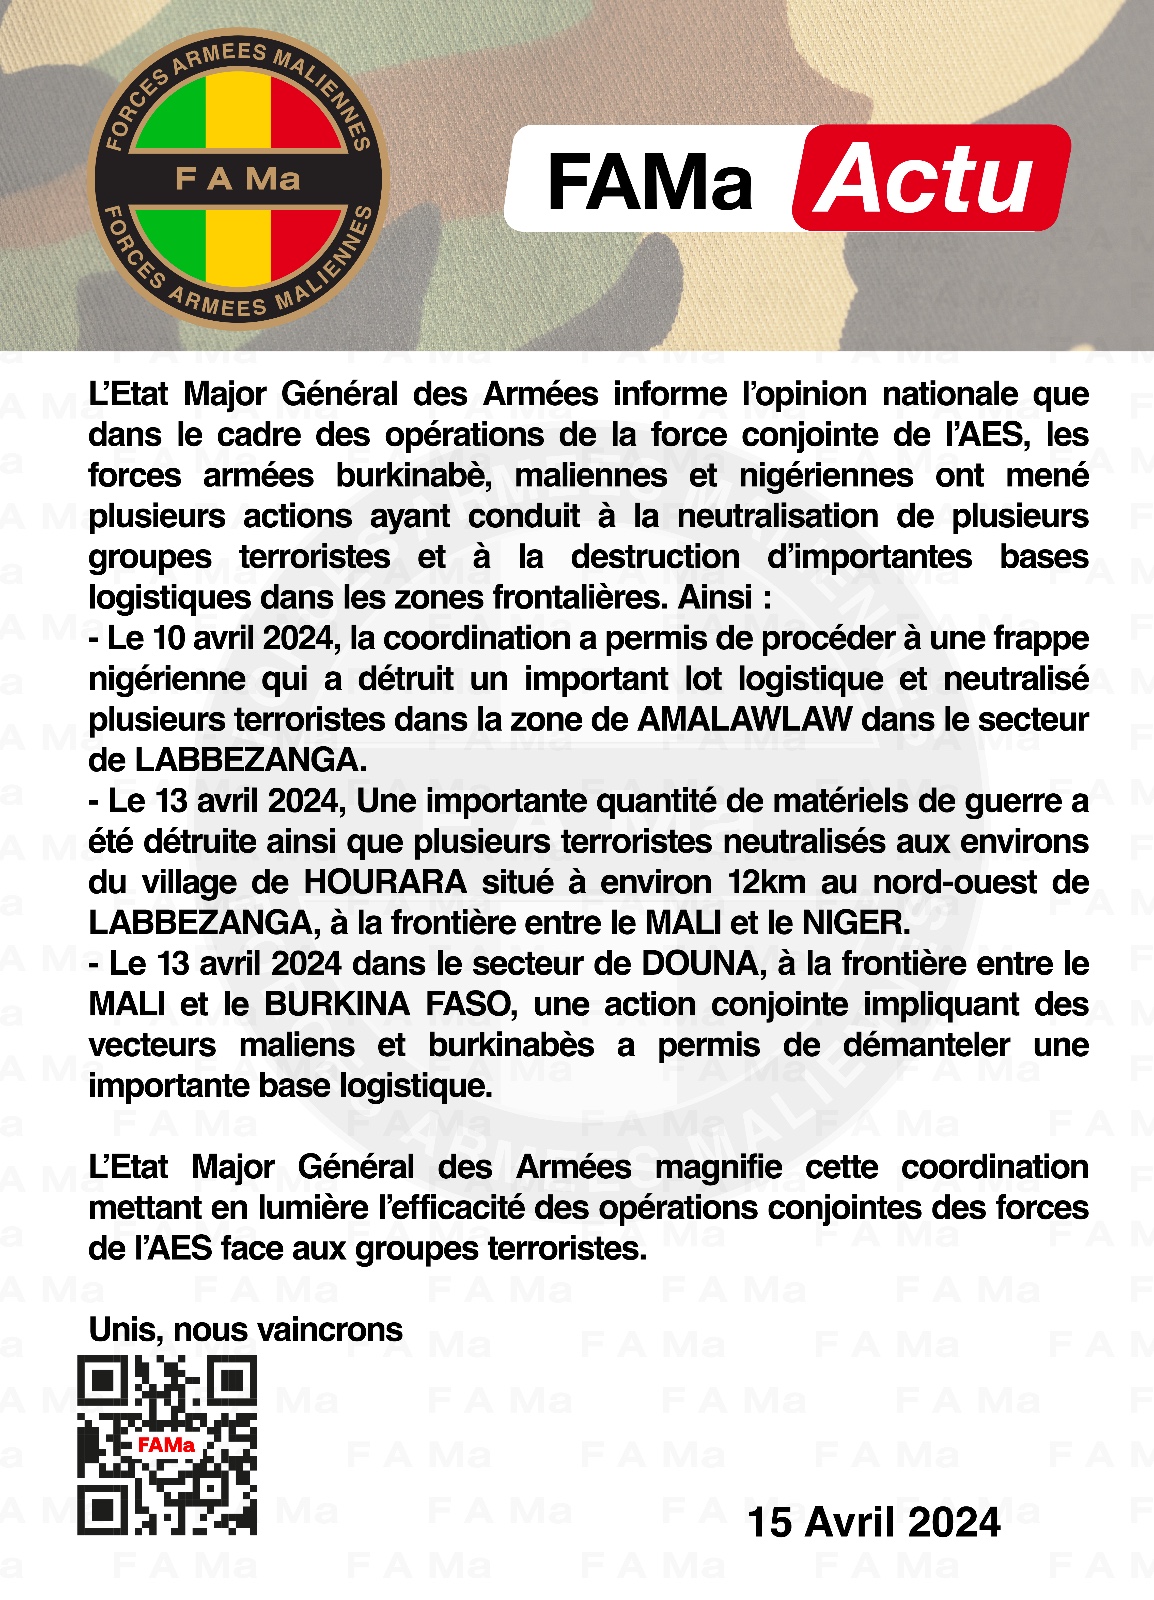 L’Etat Major Général des Armées informe l’opinion nationale que dans le cadre des opérations de la force conjointe de l’AES, les forces armées burkinabè, maliennes et nigériennes ont mené plu